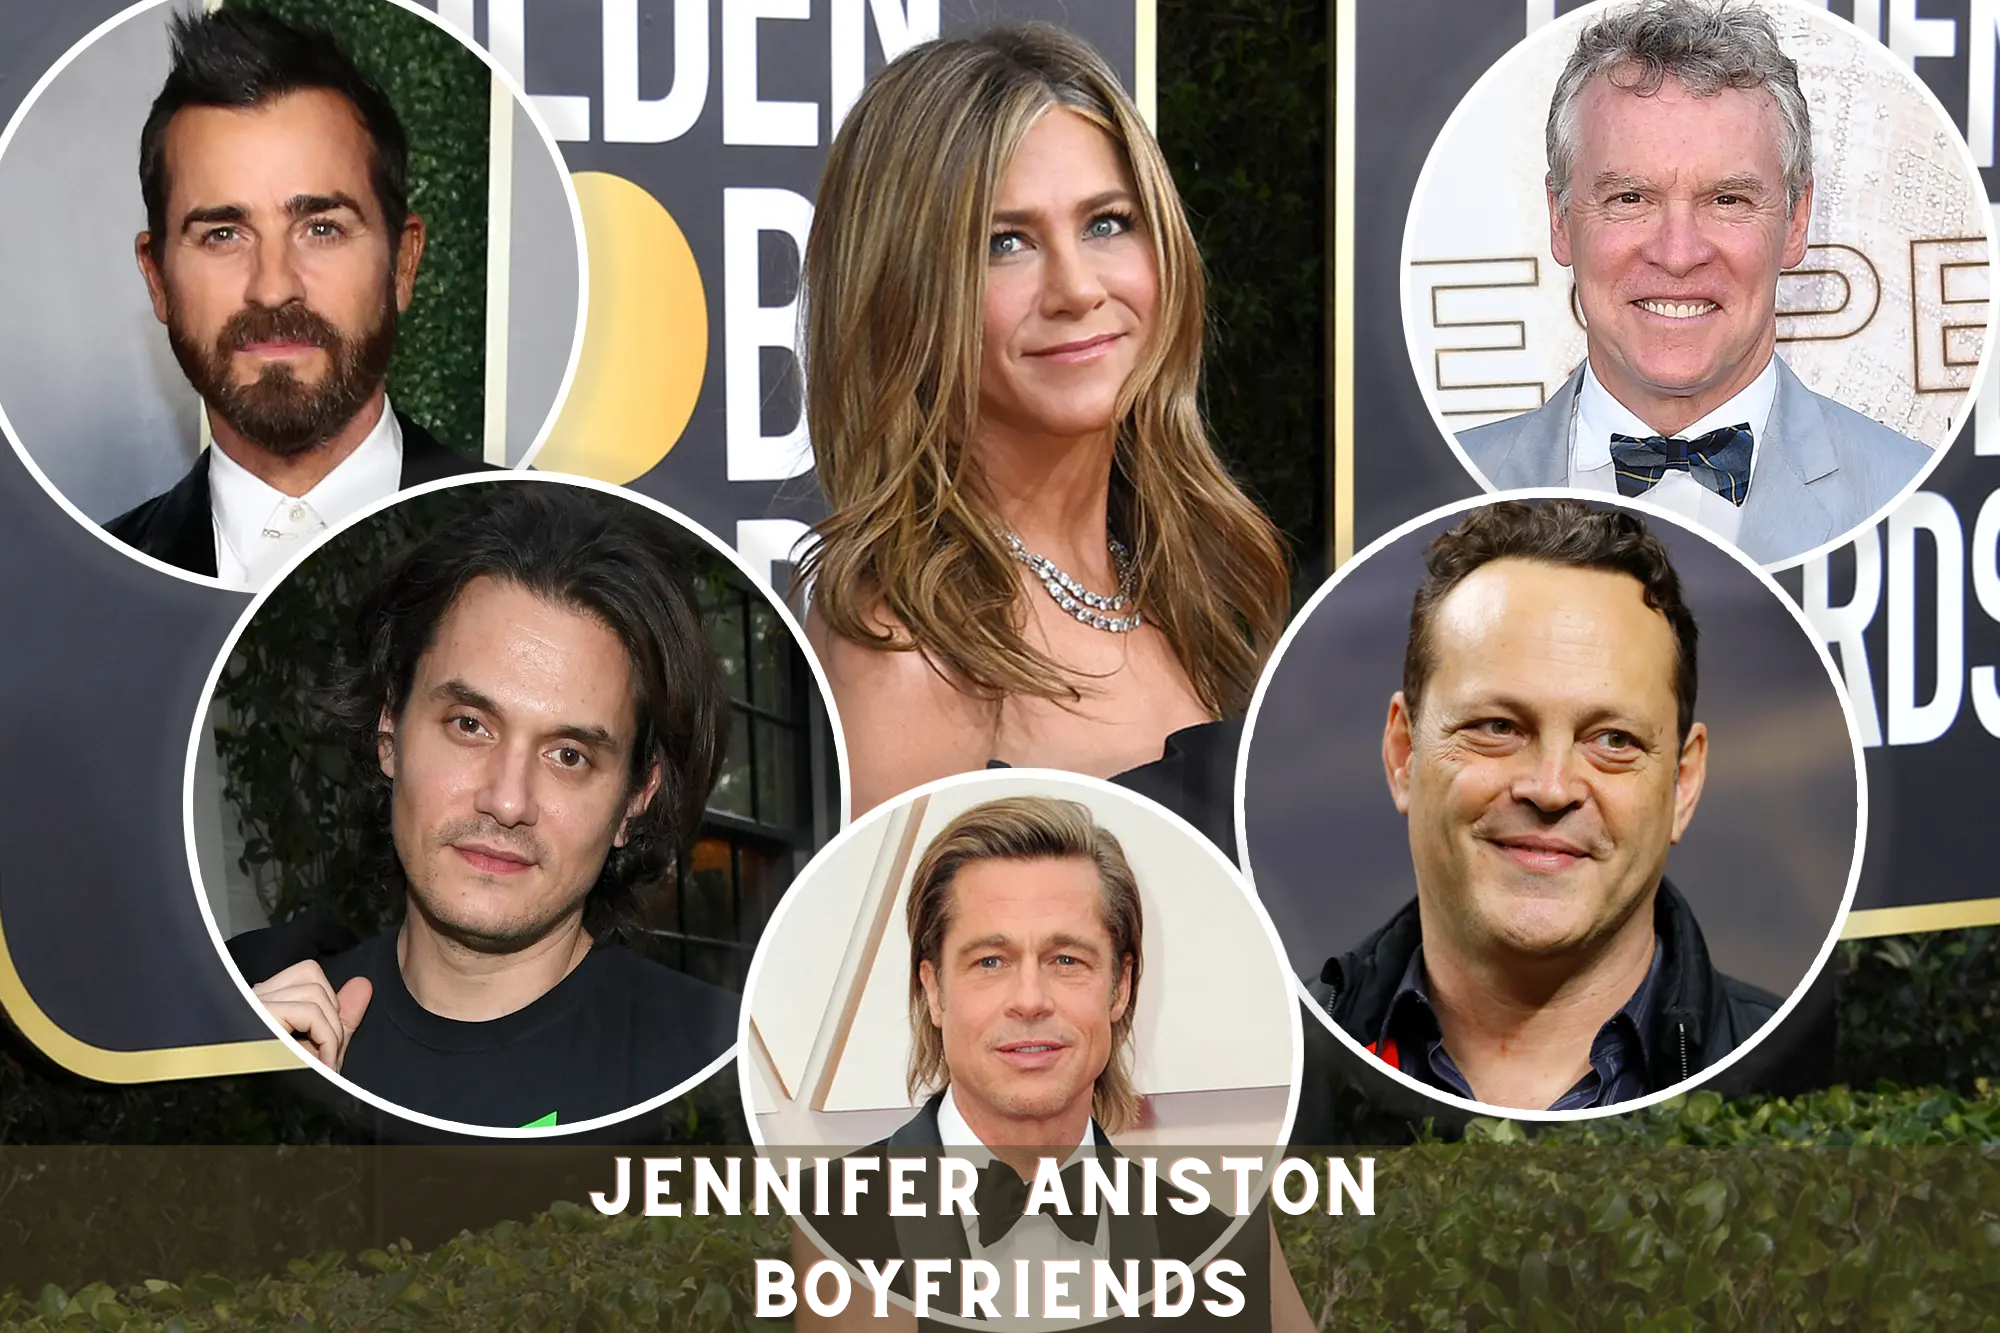 Jennifer Aniston Boyfriends